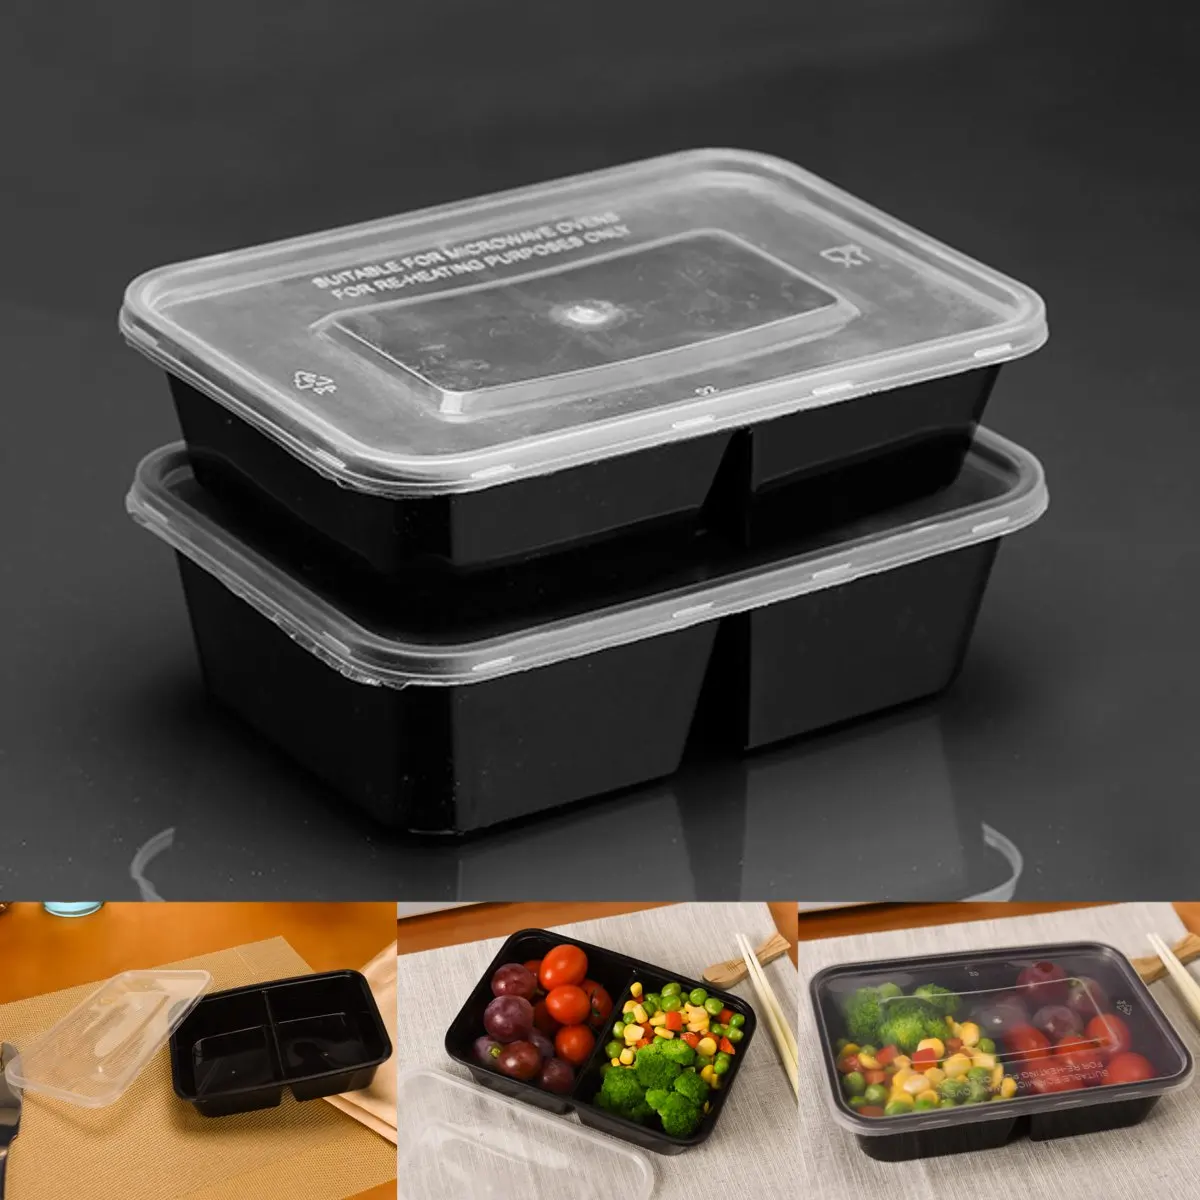 Для еды контейнеры пластиковый для хранения еды микроволны многоразовые 2 коробка с отделениями для завтрака 500 мл., для хранения пищи контейнеры 10 шт. в комплекте